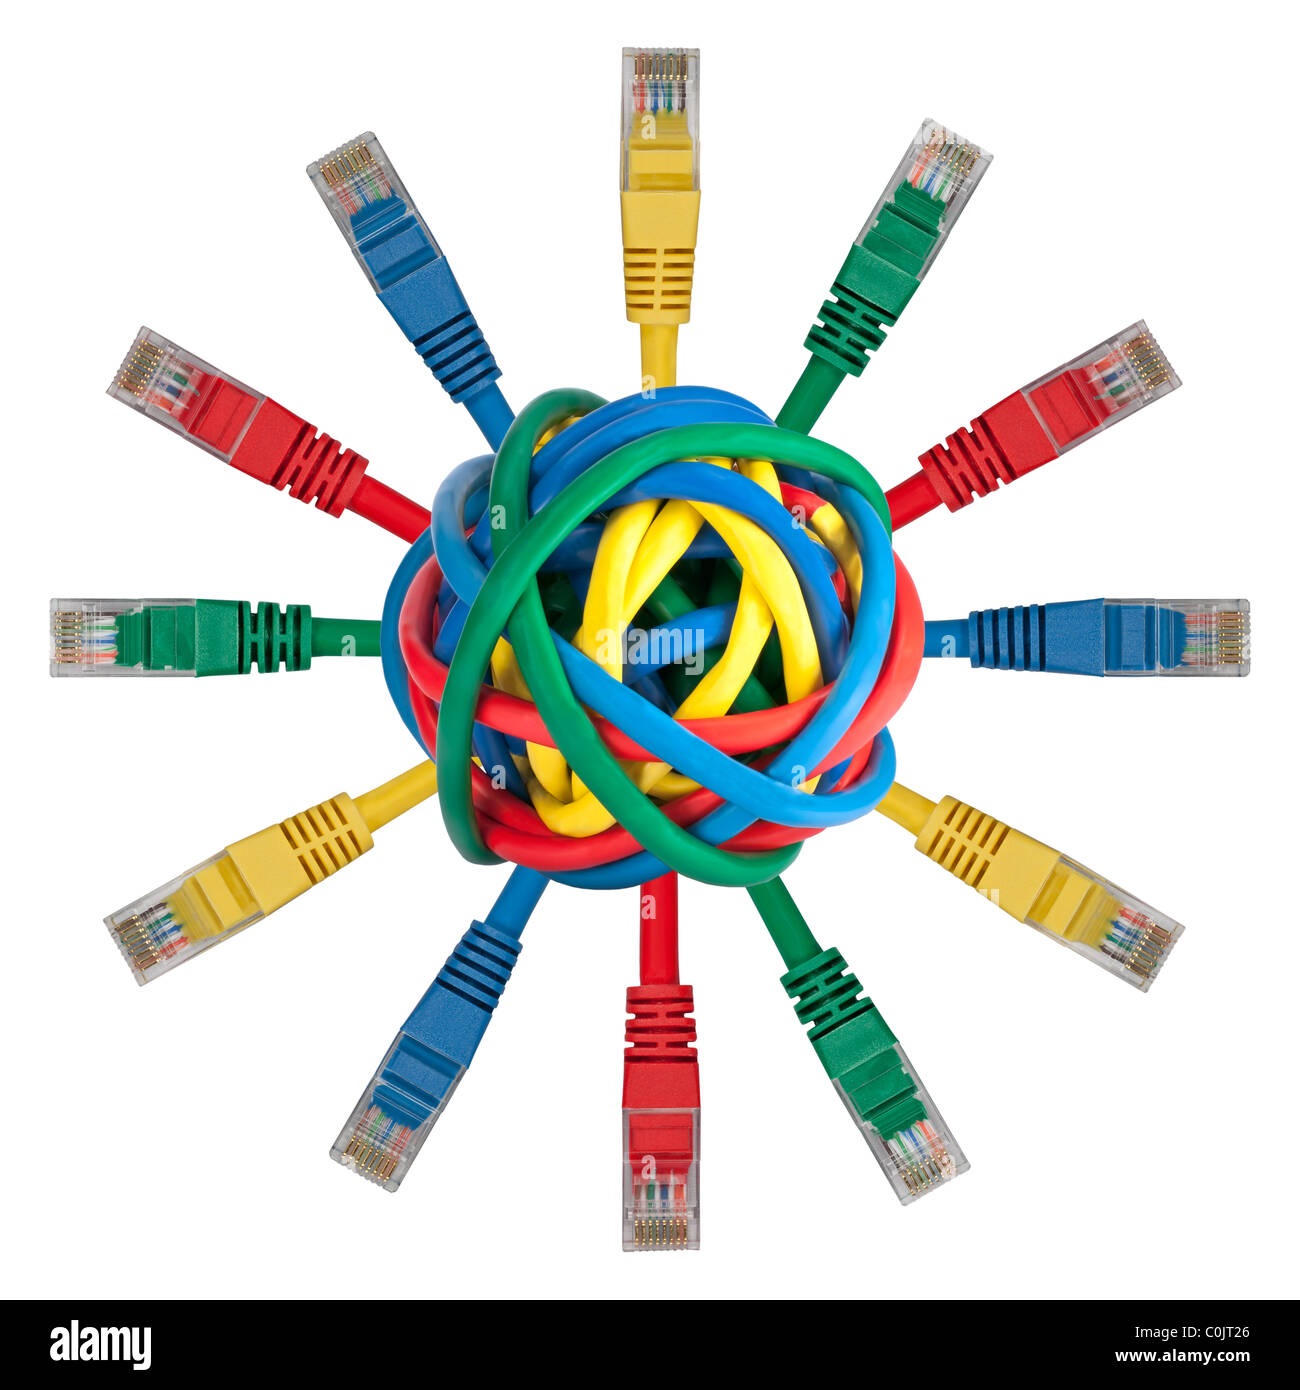 Ball der farbigen Kabel mit Netzwerk-Stecker in jede Richtung isoliert auf weißem Hintergrund Stockfoto